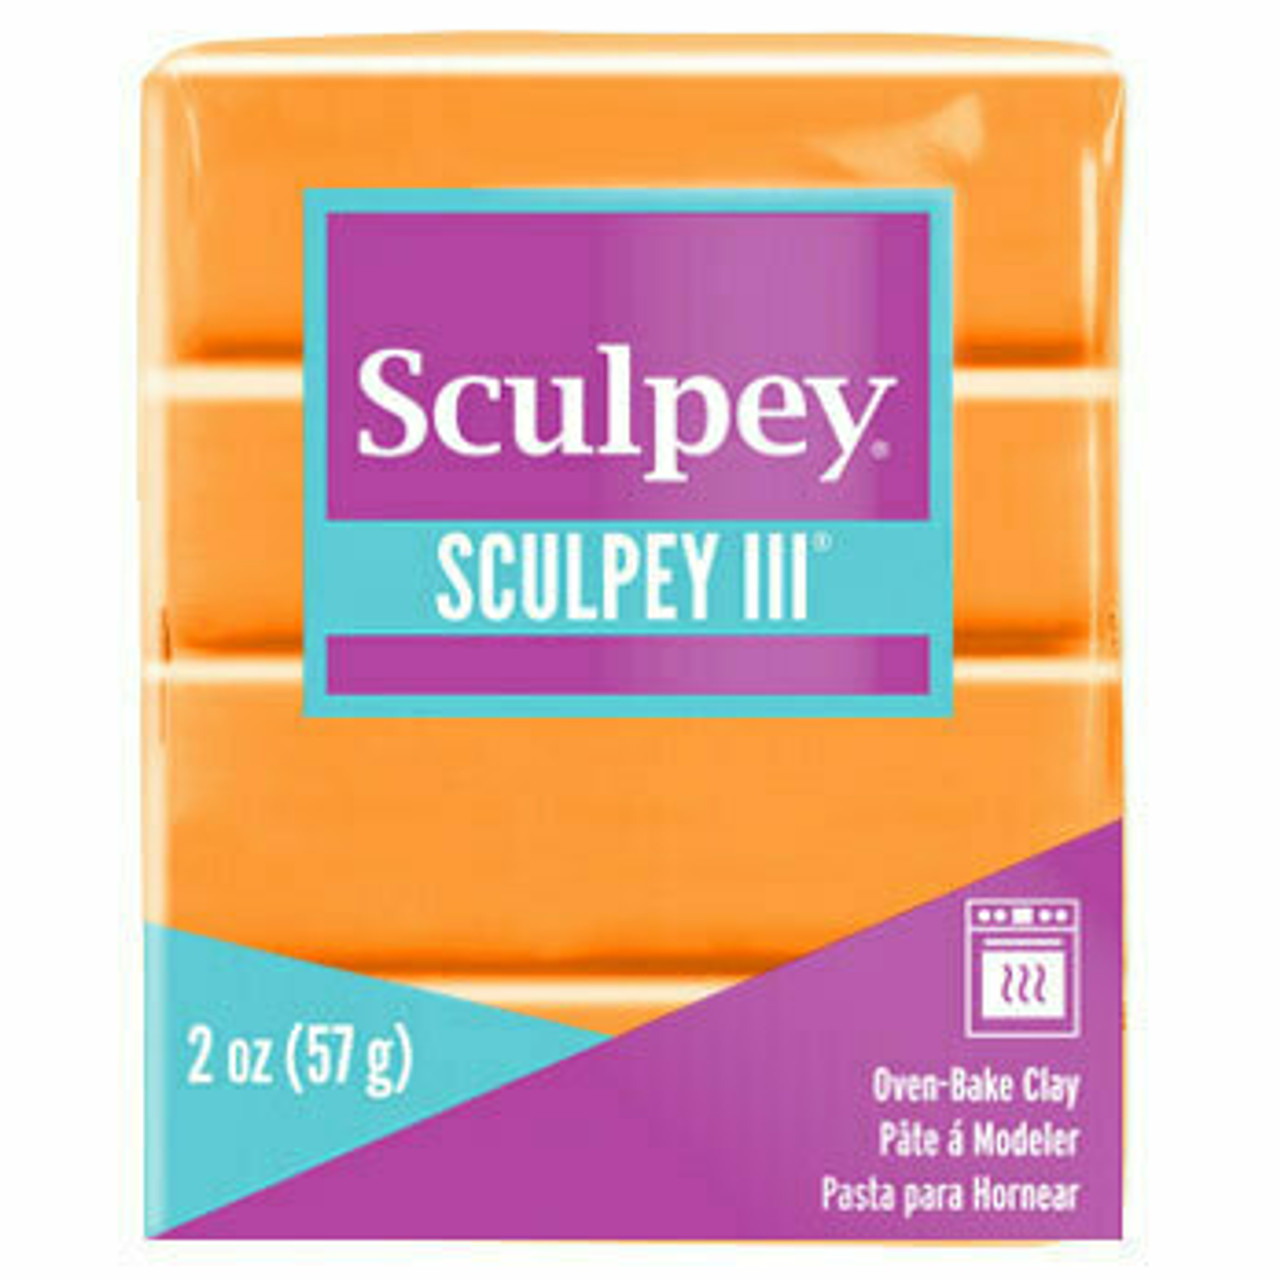 Sculpey III Just Orange 2oz (57g)